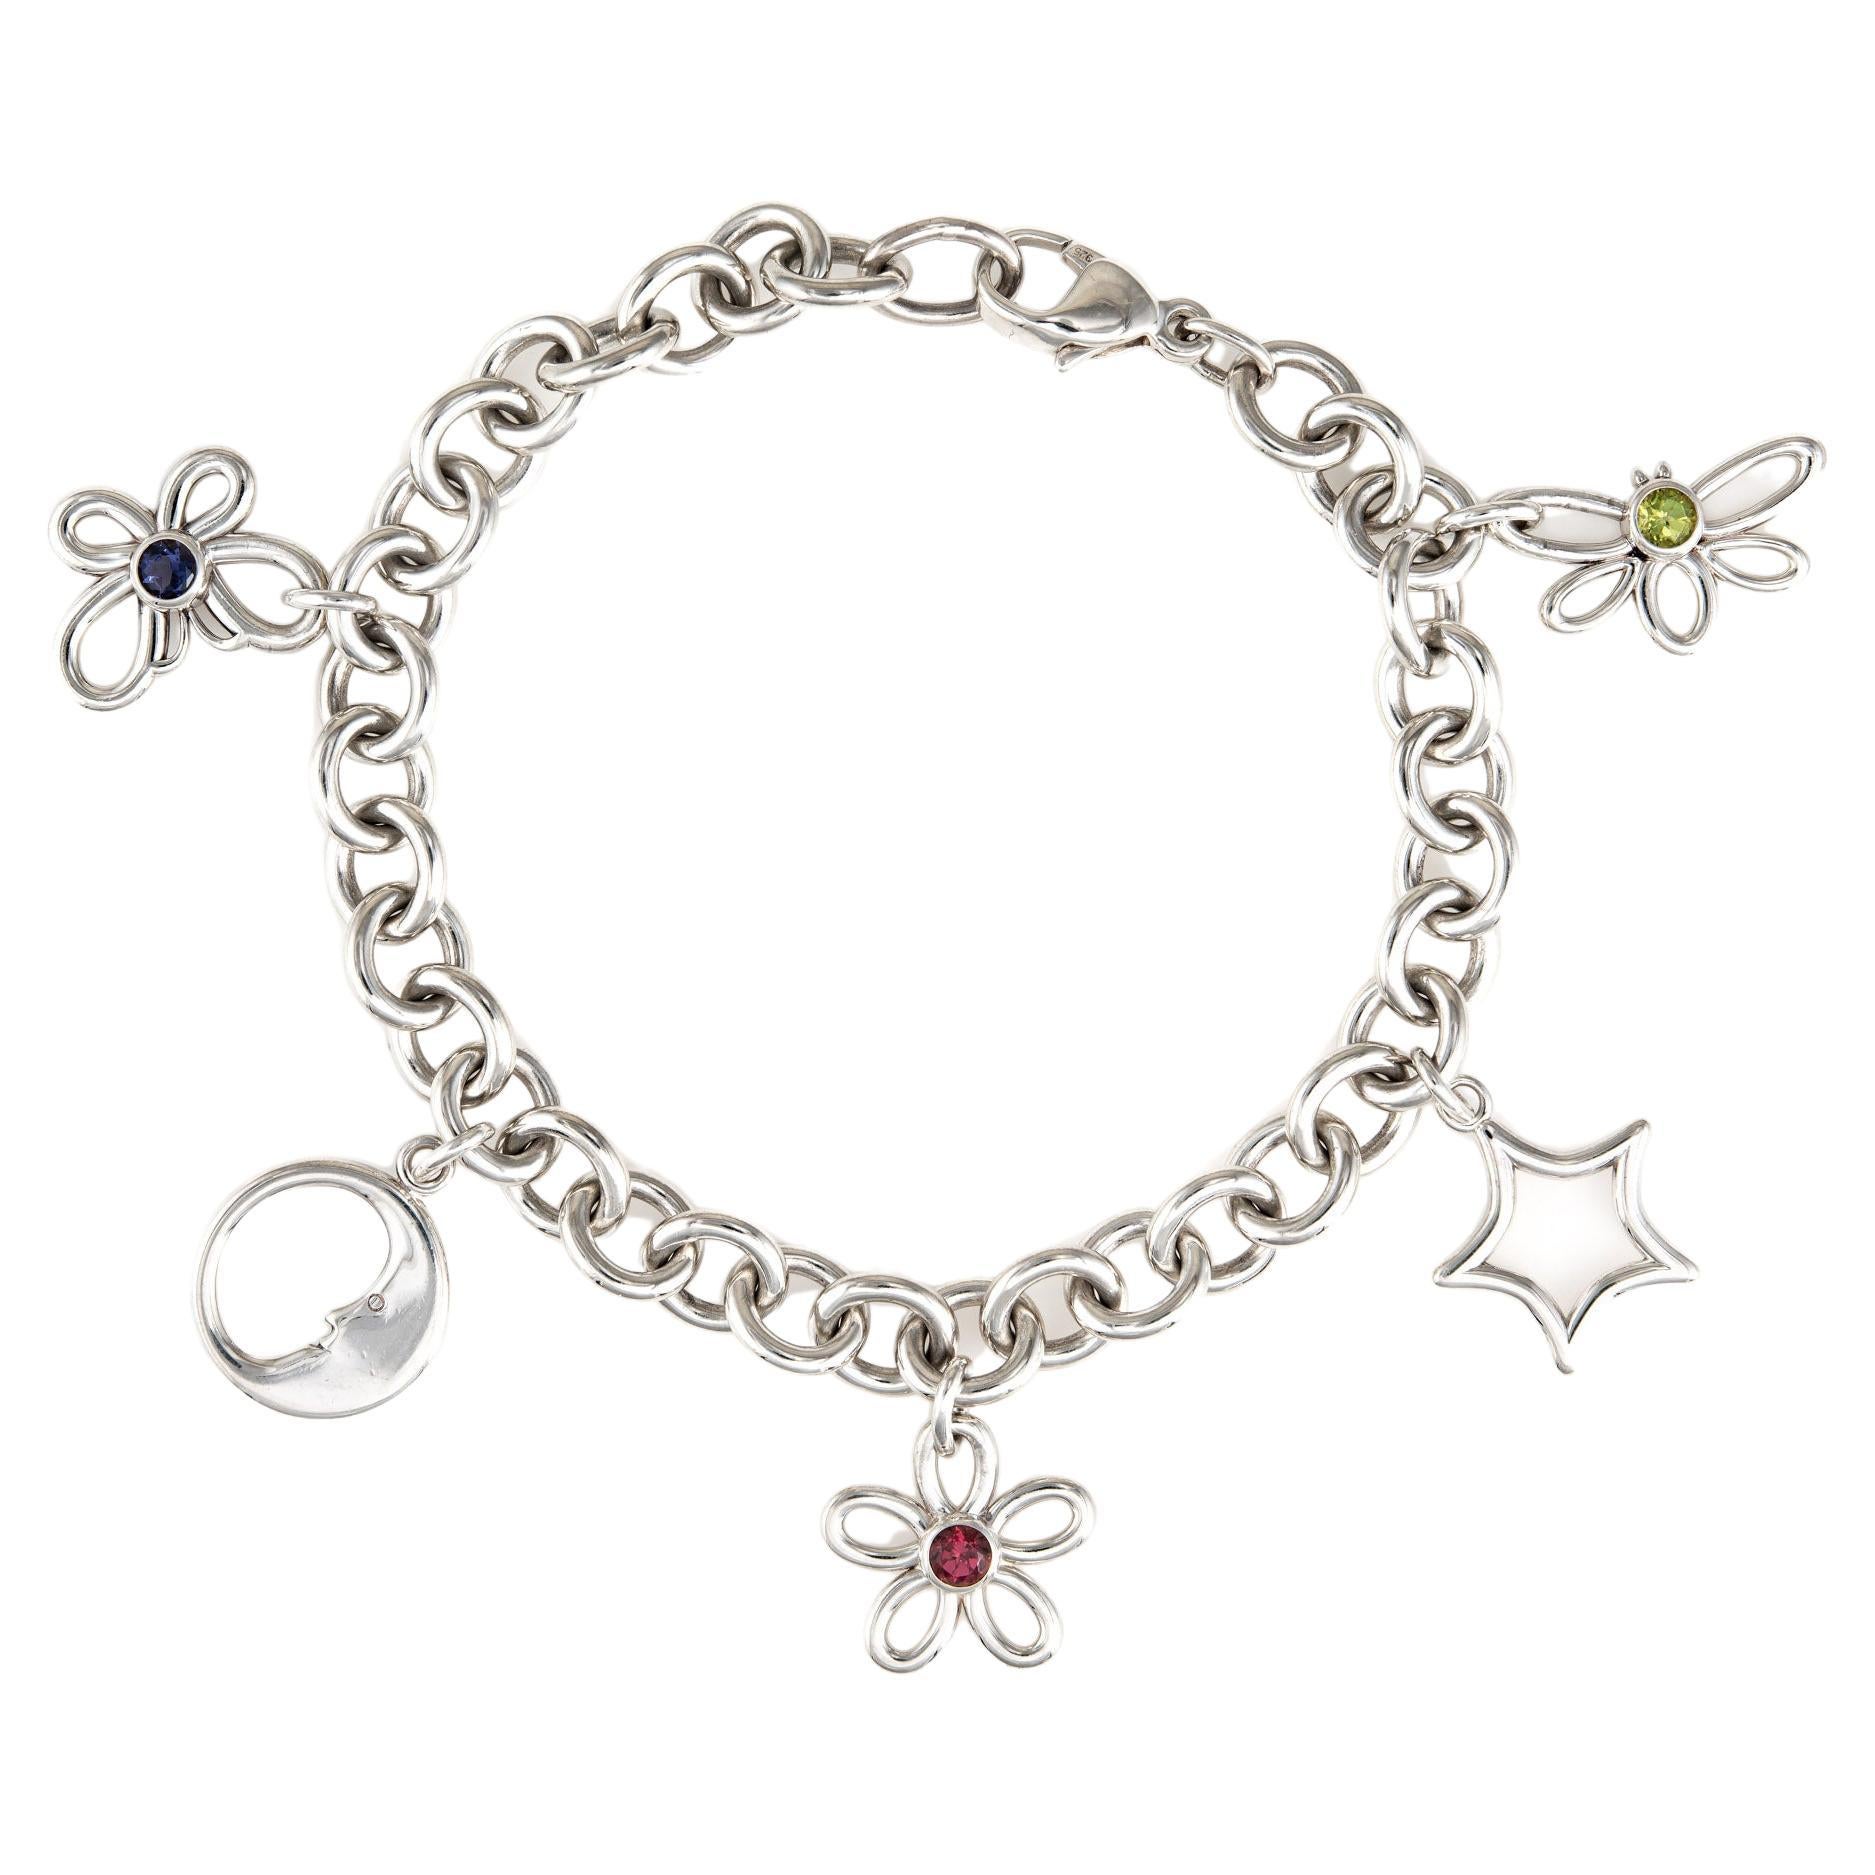 Vintage Tiffany & Co Charm Bracelet 2003 Silver Moon Star Flower Butterfly